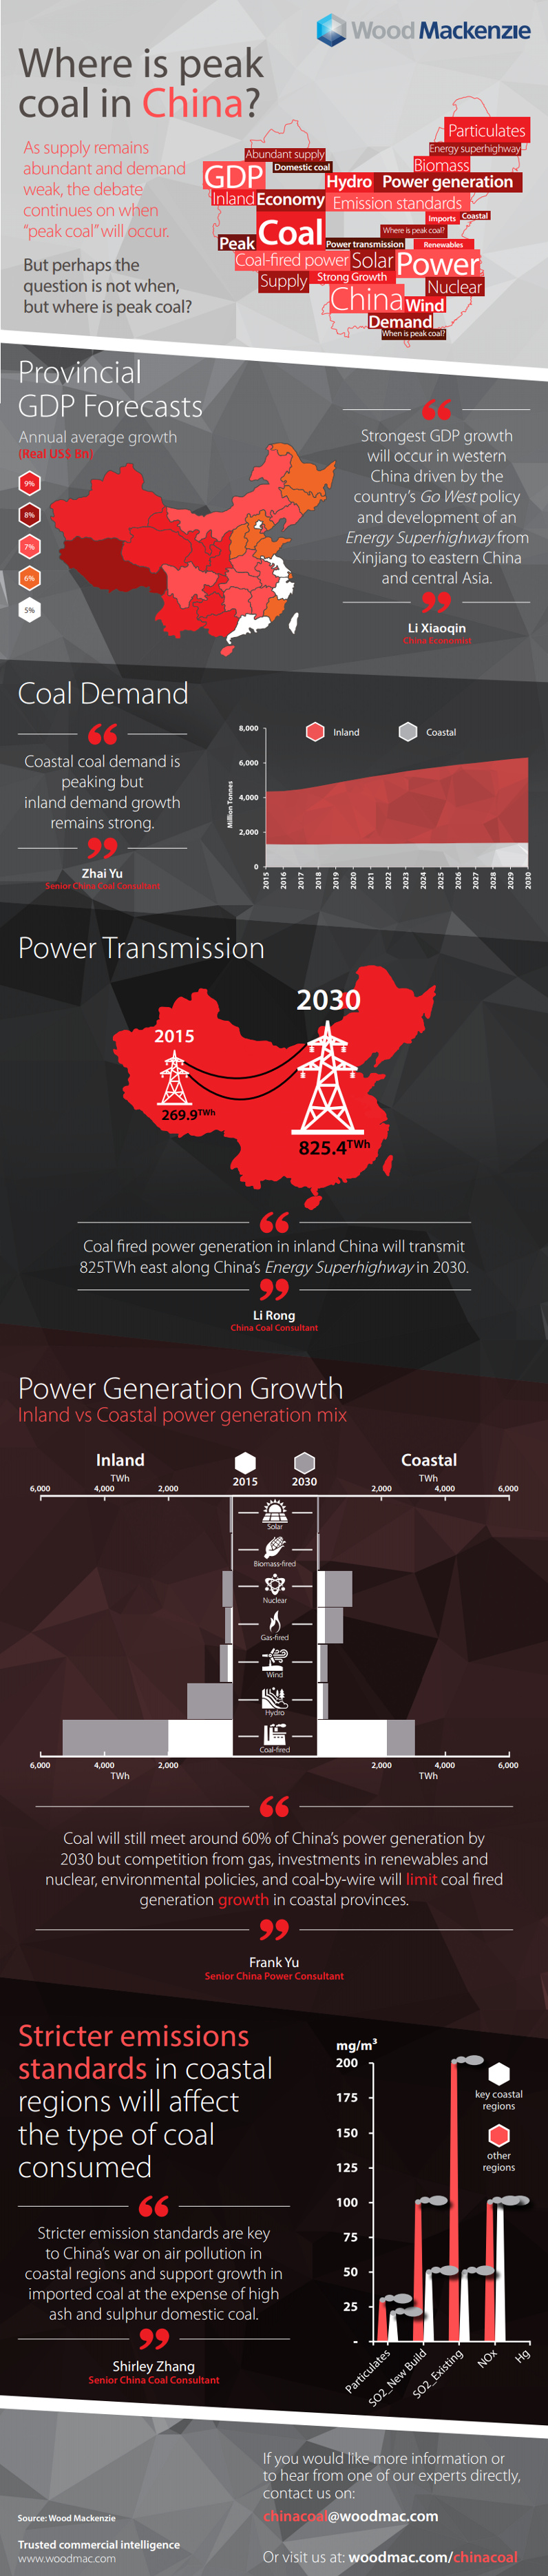 Where is Peak Coal in China?